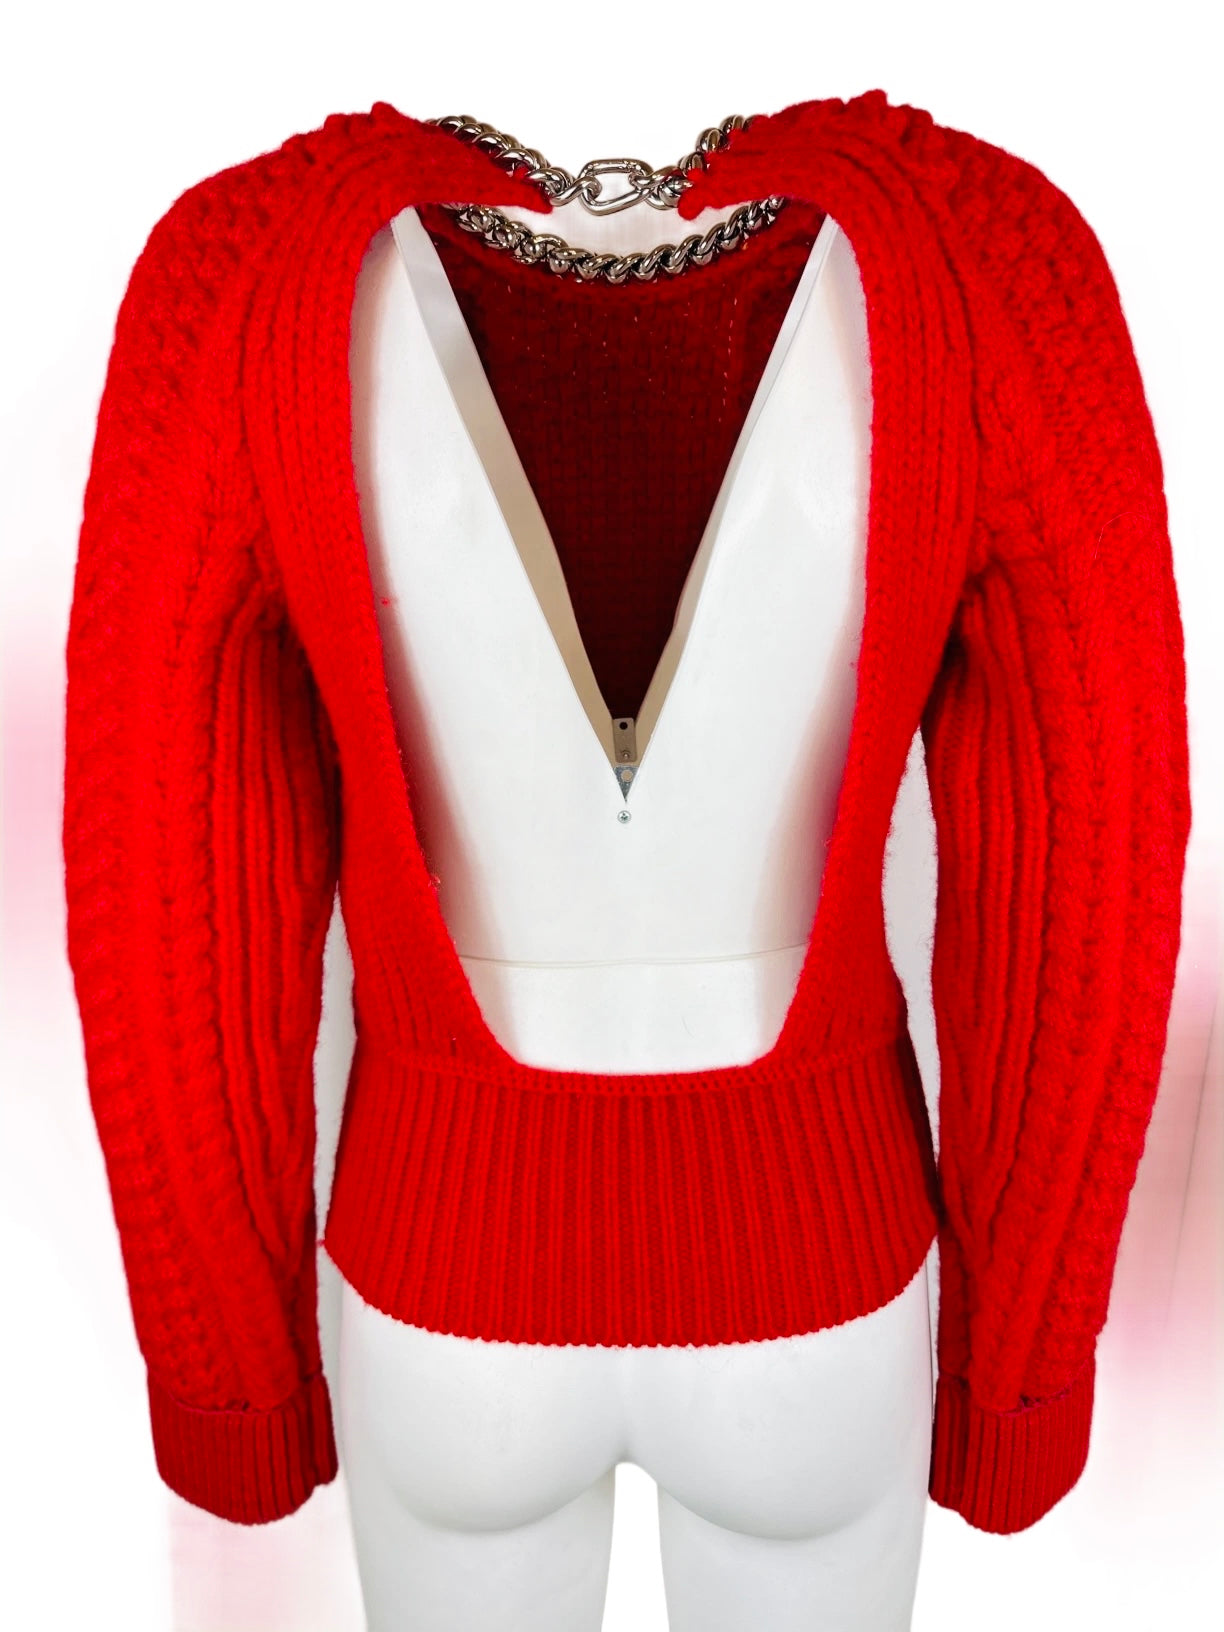 BOTTEGA VENETA - Pullover red open back chain details size S